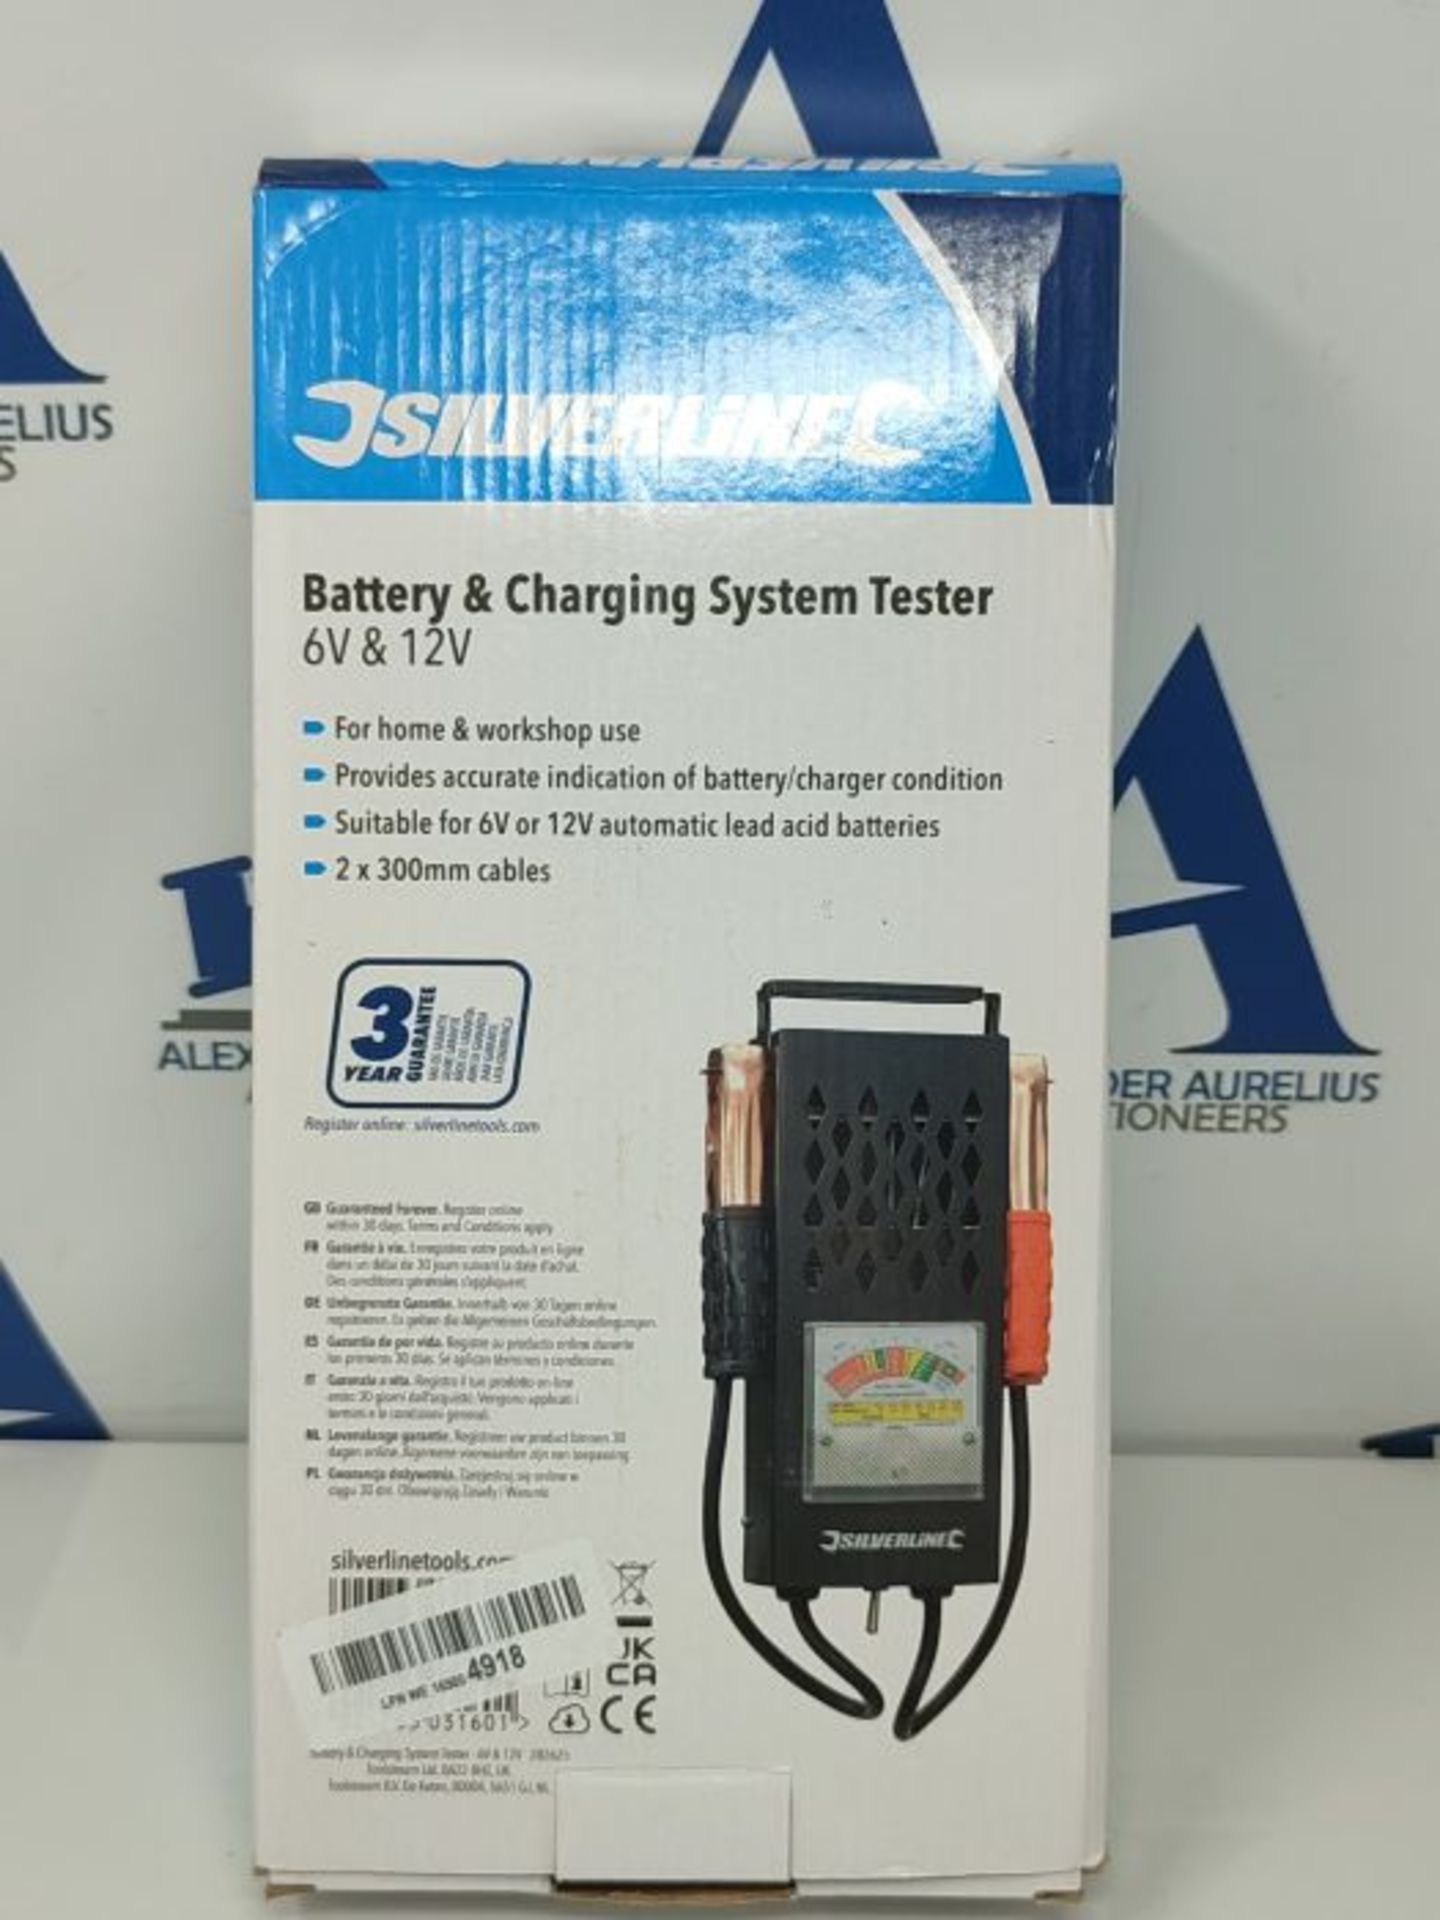 Silverline Battery & Charging System Tester 6V & 12V (282625) - Image 2 of 3